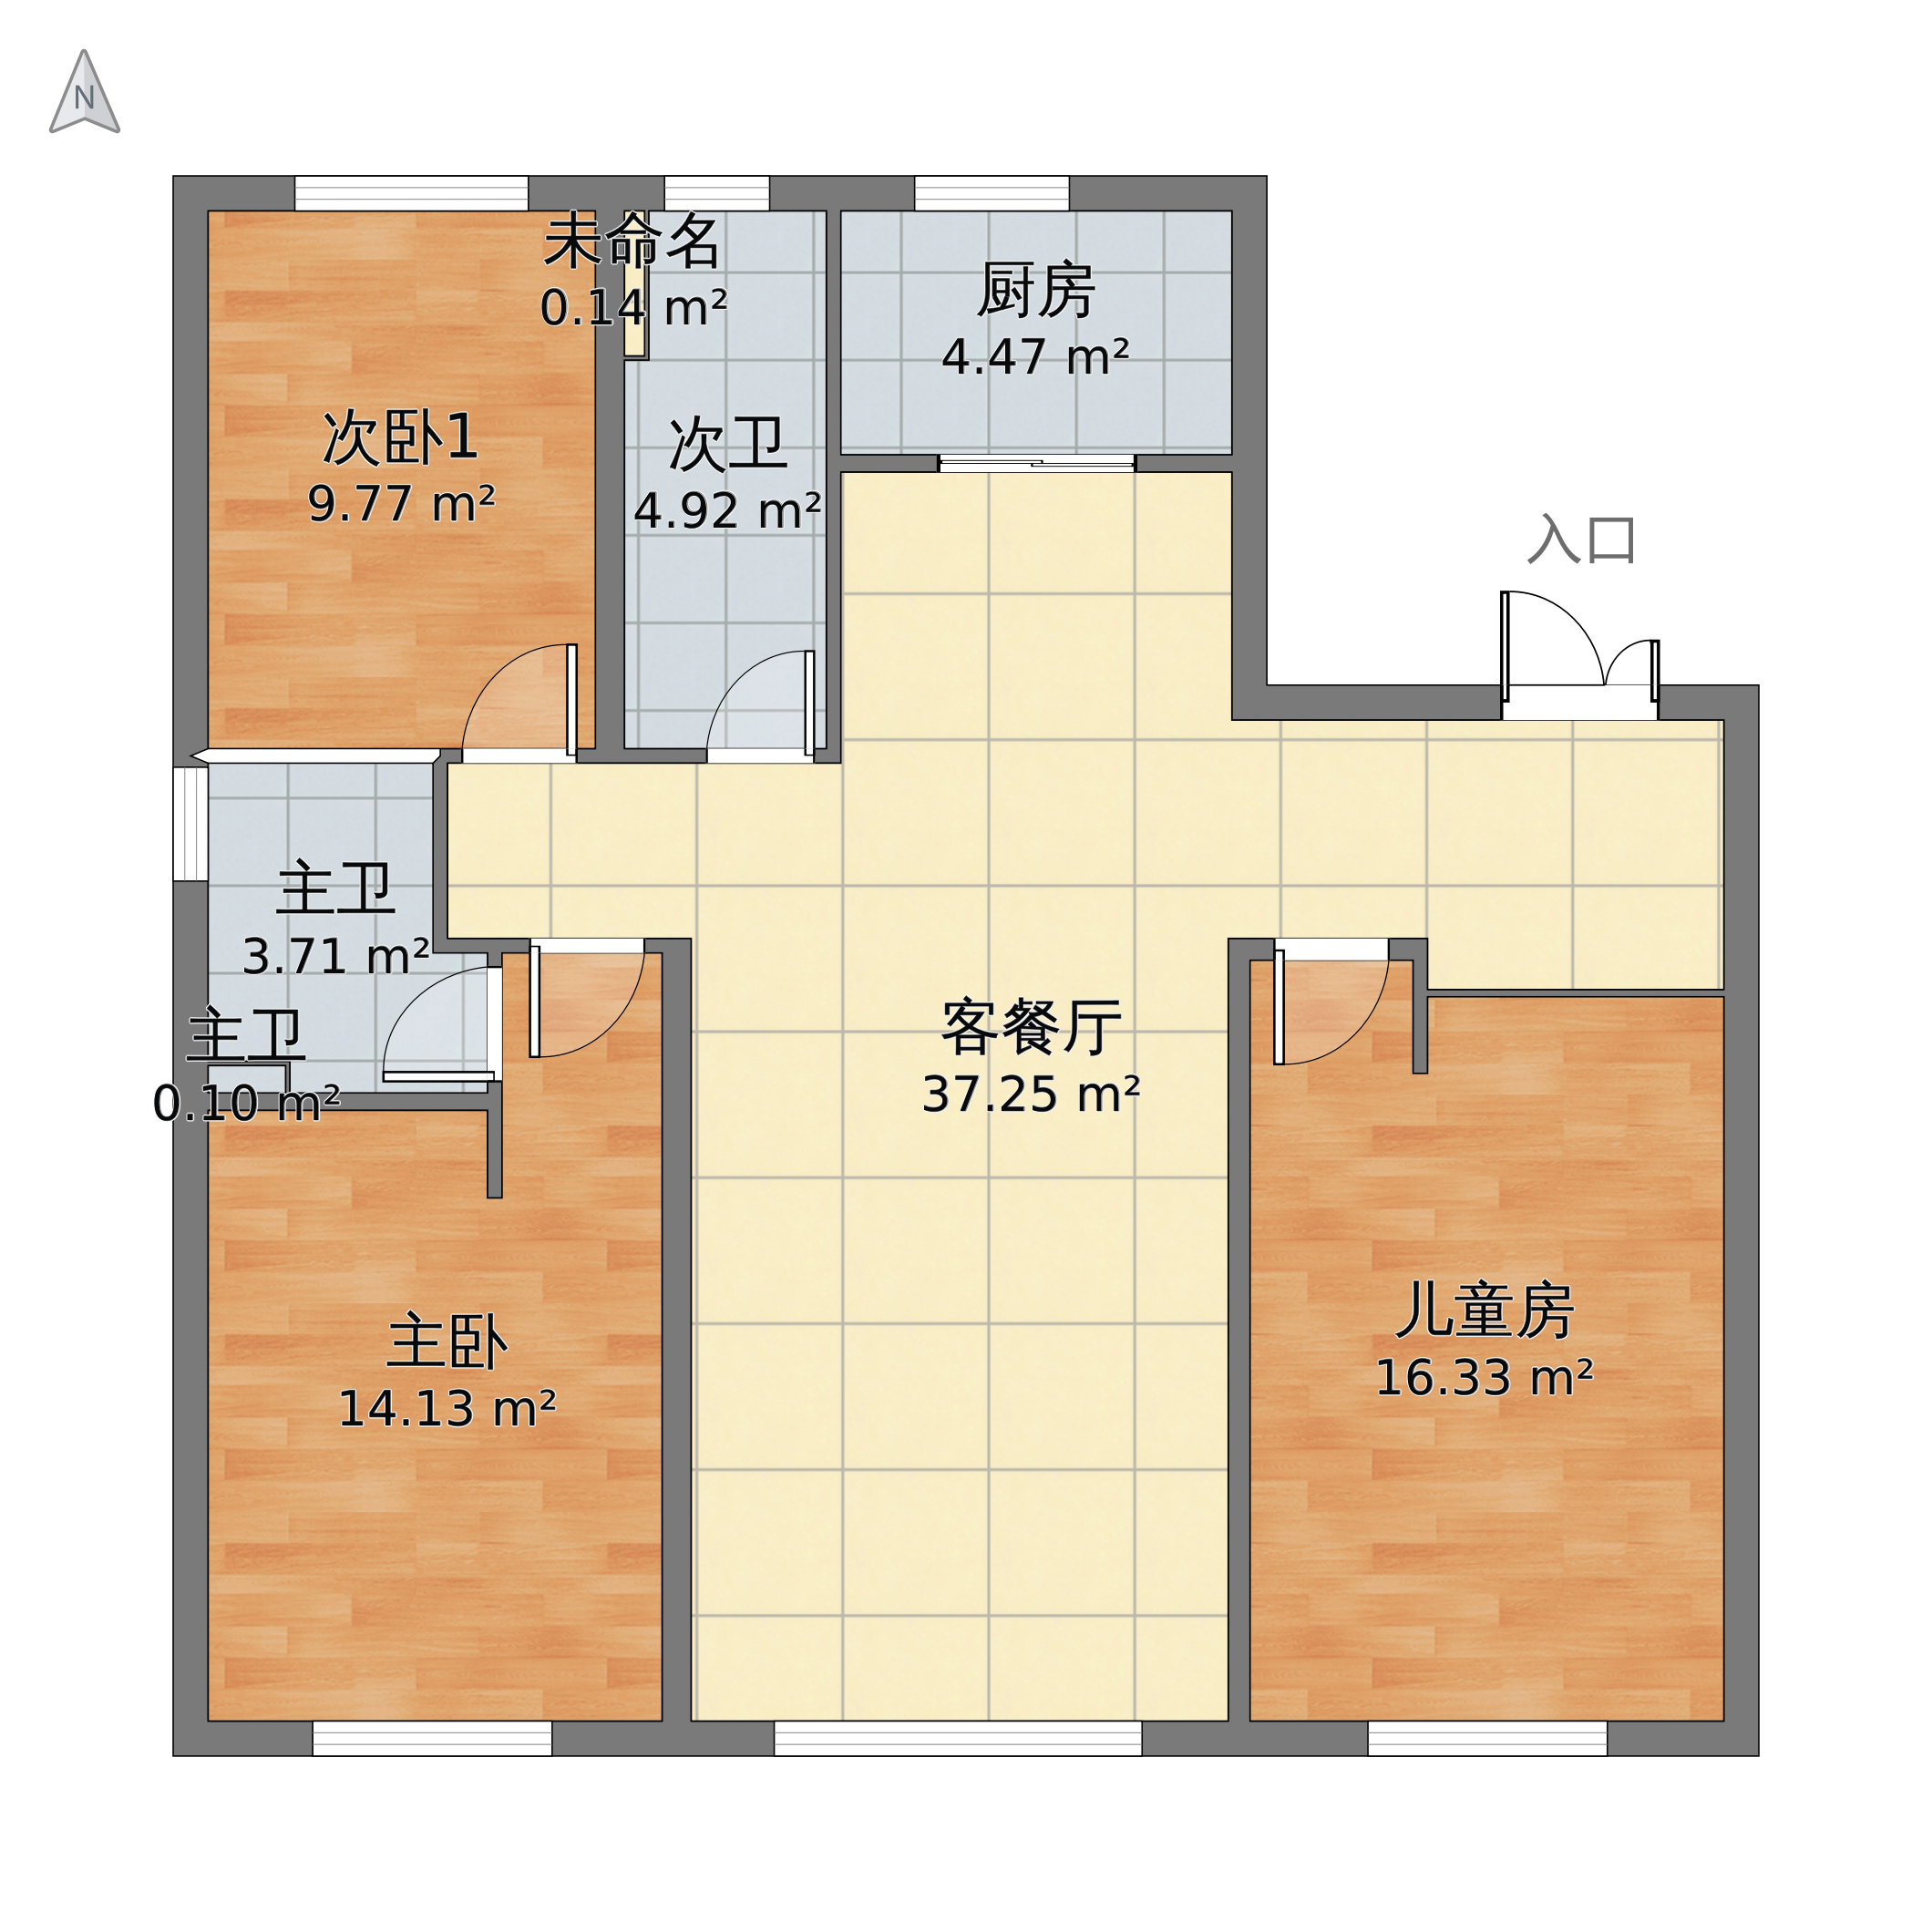 此效果图是由专业设计师李文文设计的《汇智五洲城三室两厅现代简约